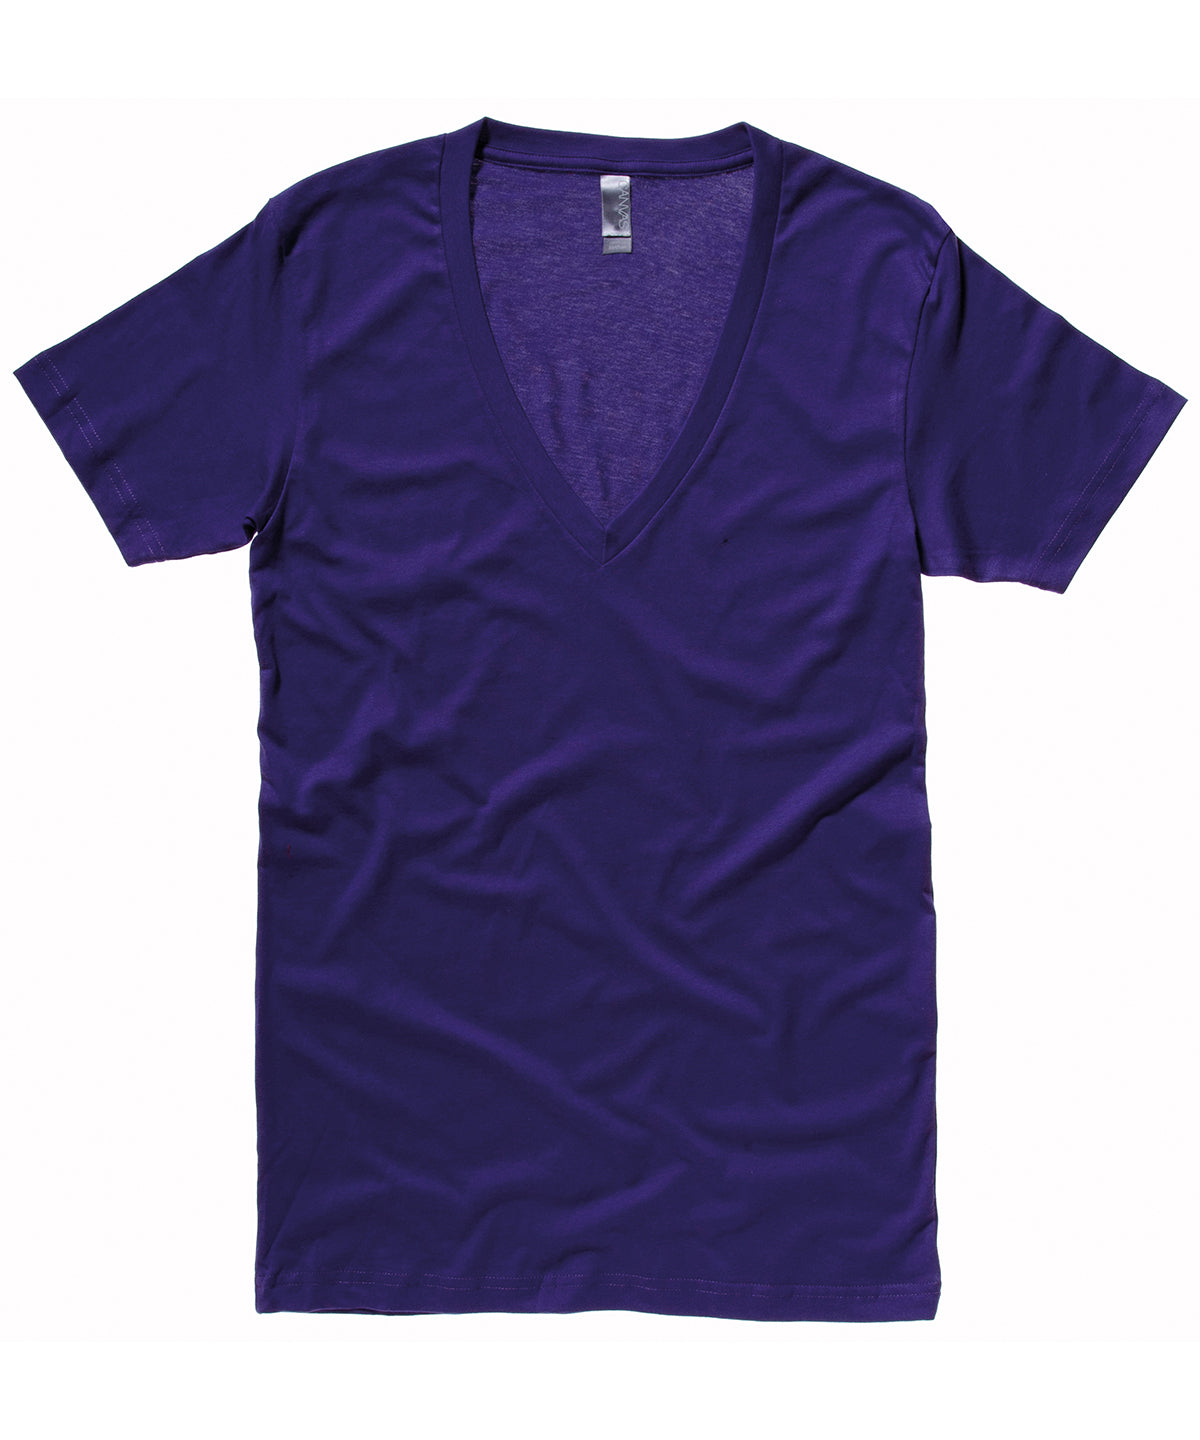 Stuttermabolir - Unisex Jersey Deep V-neck T-shirt